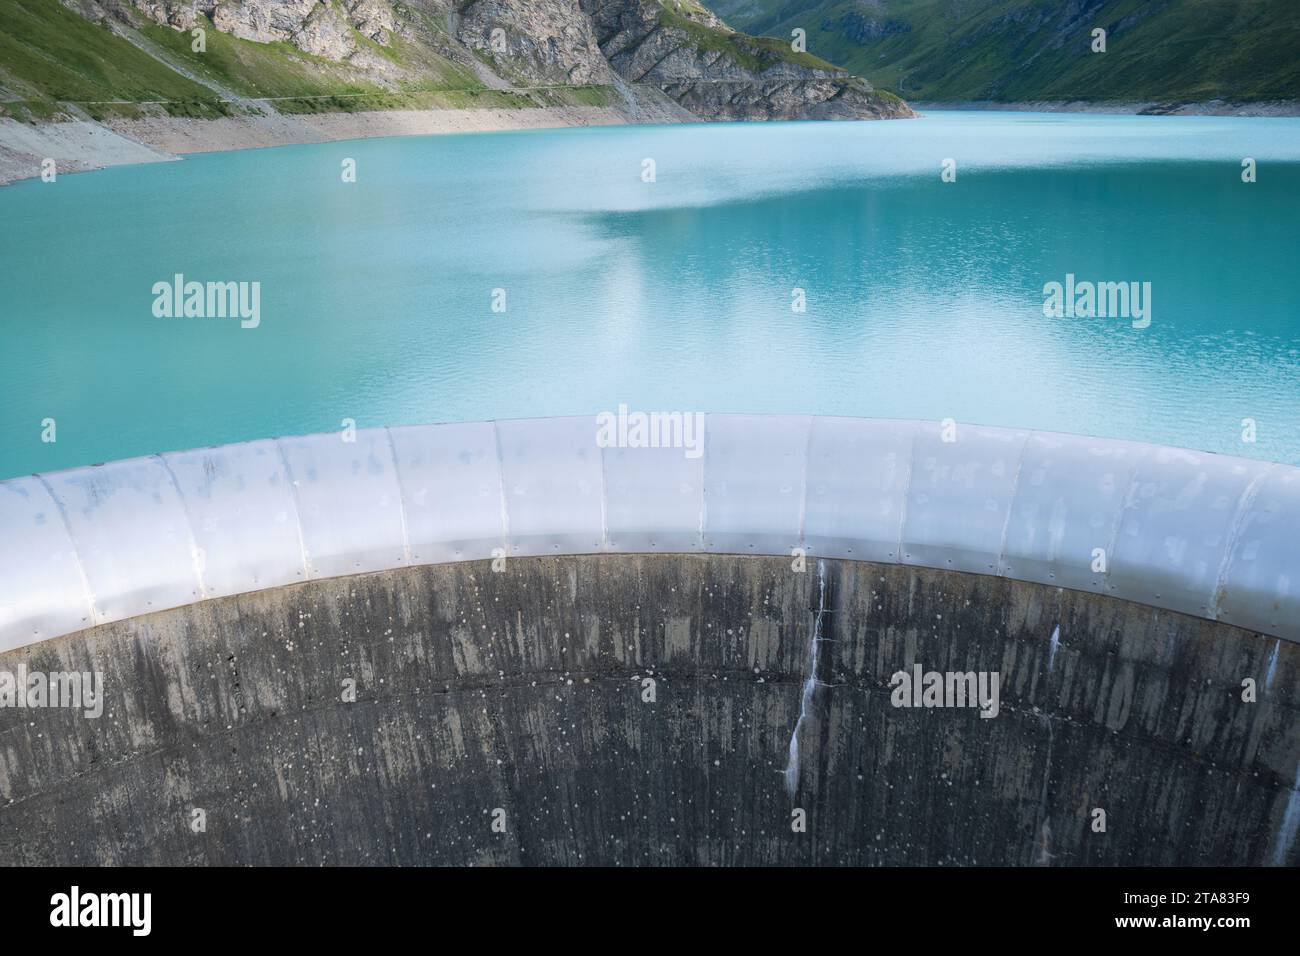 La diga di Moiry e le acque turchesi del Lac de Moiry, alla testa della valle di Grimentz, Svizzera. Foto Stock